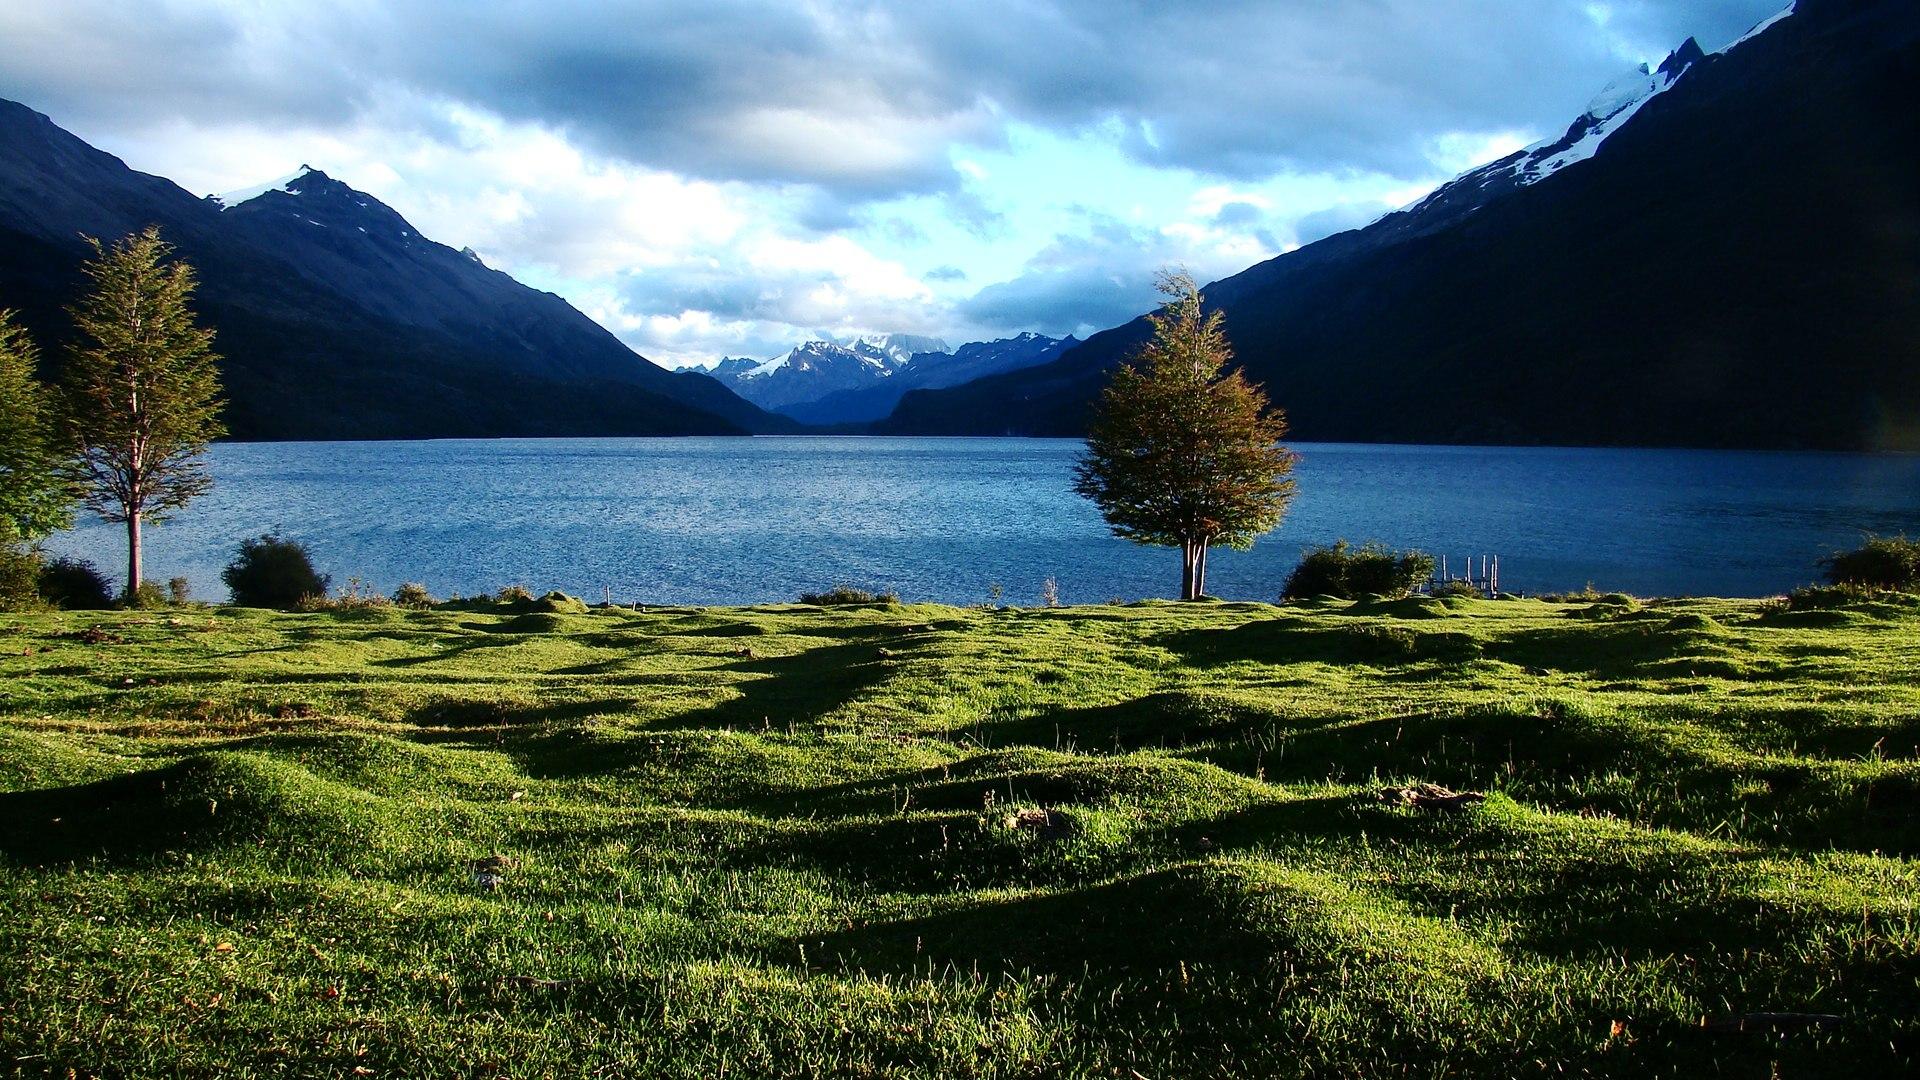 Argentina Landscape Pictures | Download Free Images on Unsplash